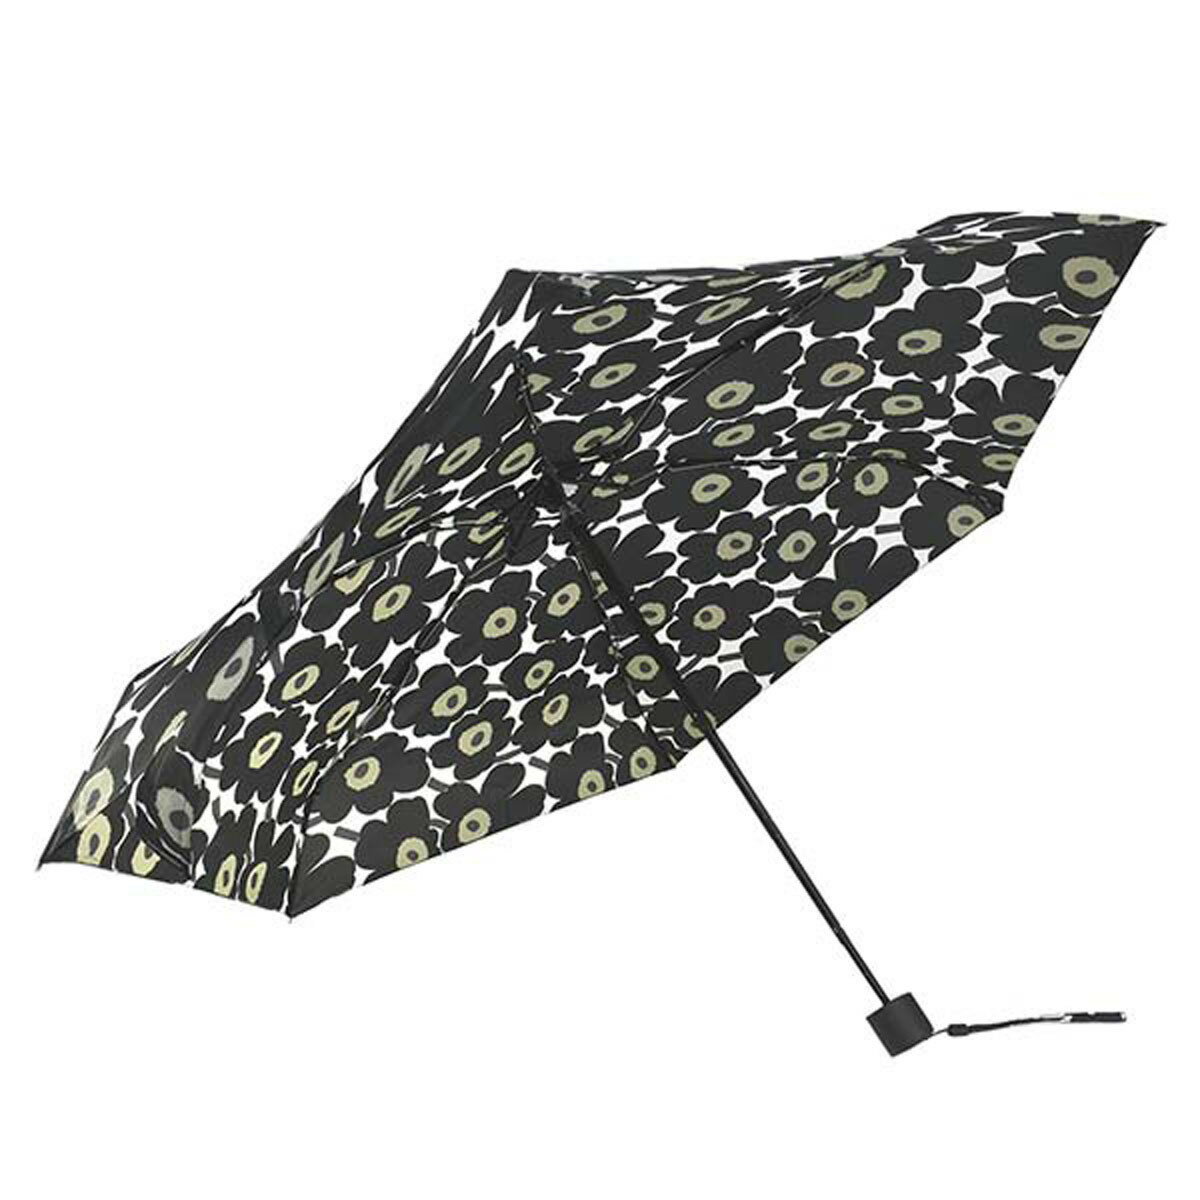 マリメッコ  マリメッコ marimekko 折りたたみ傘 傘 雨傘 折り畳み 048857 030 MINI MANUAL UMBRELLA ミニ マニュアル アンブレラ MINI UNIKKO ブラック系